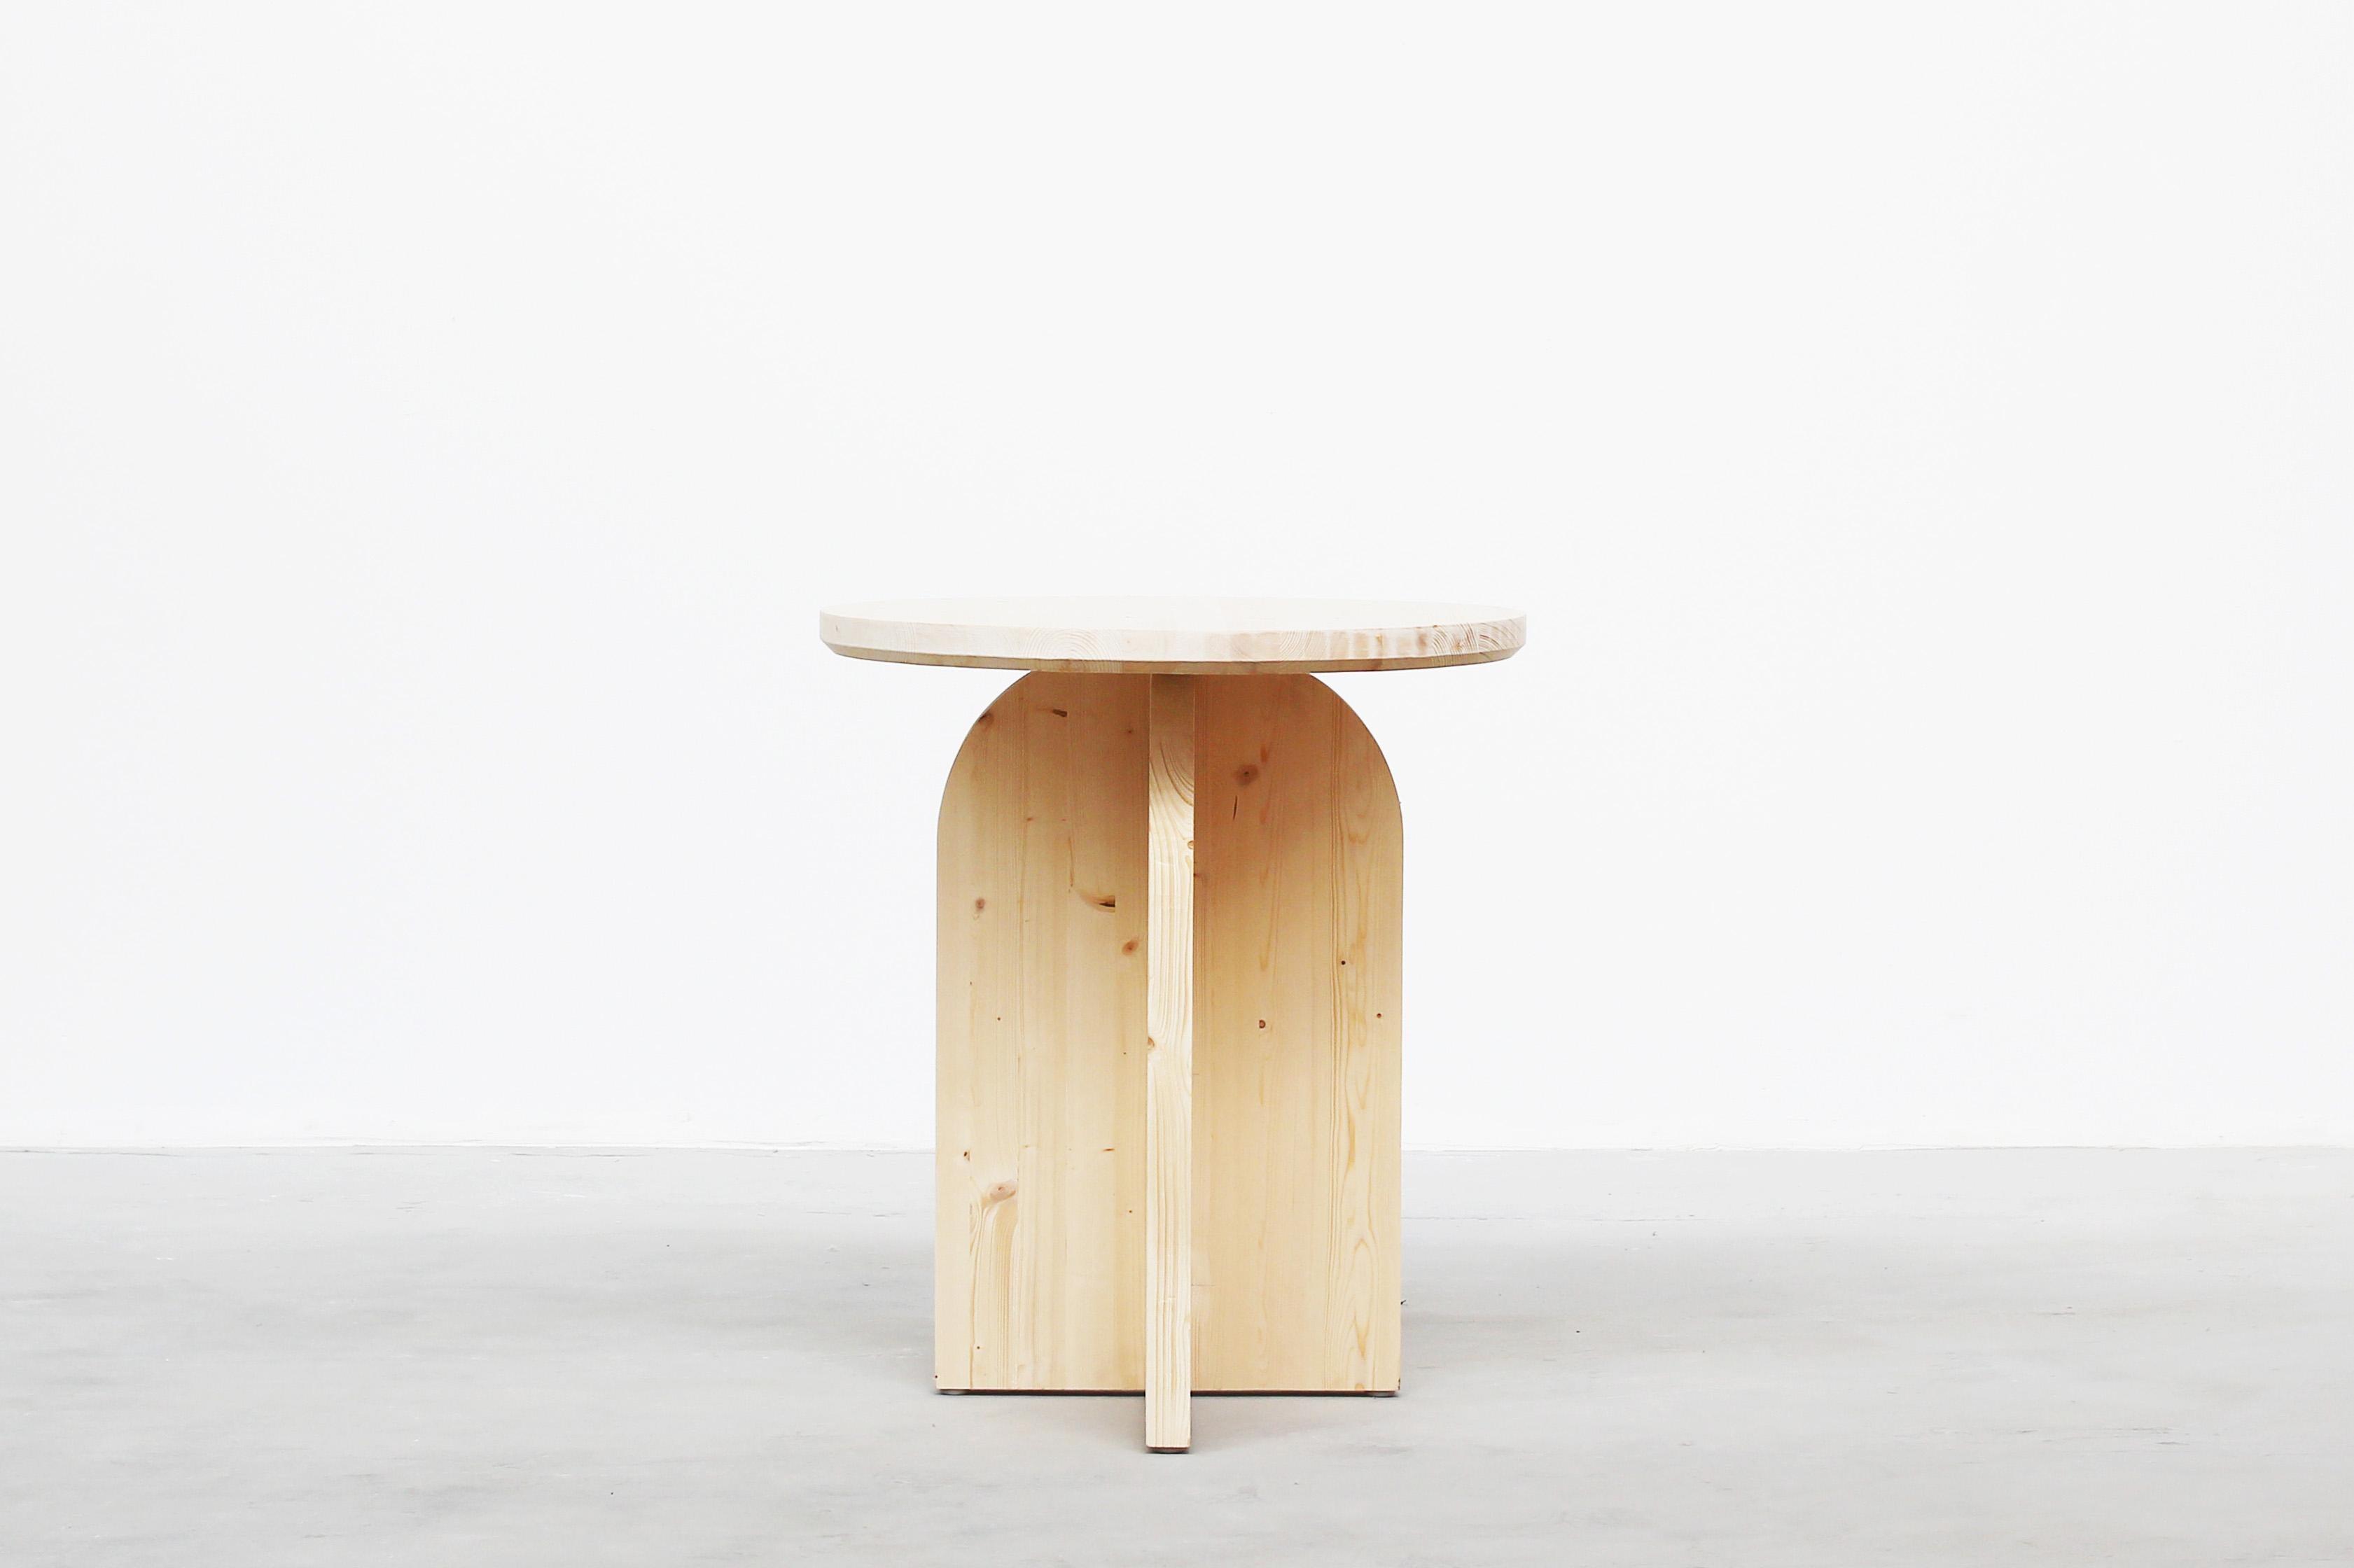 Schöner runder Tisch, entworfen von Yuzo Bachmann für Atelier Bachmann, handgefertigt in Deutschland, 2019.
Dieser Tisch ist aus massivem Tannenholz gefertigt. Modern und minimalistisch, mit natürlichem Möbelwachs behandelt.

Auf Bestellung